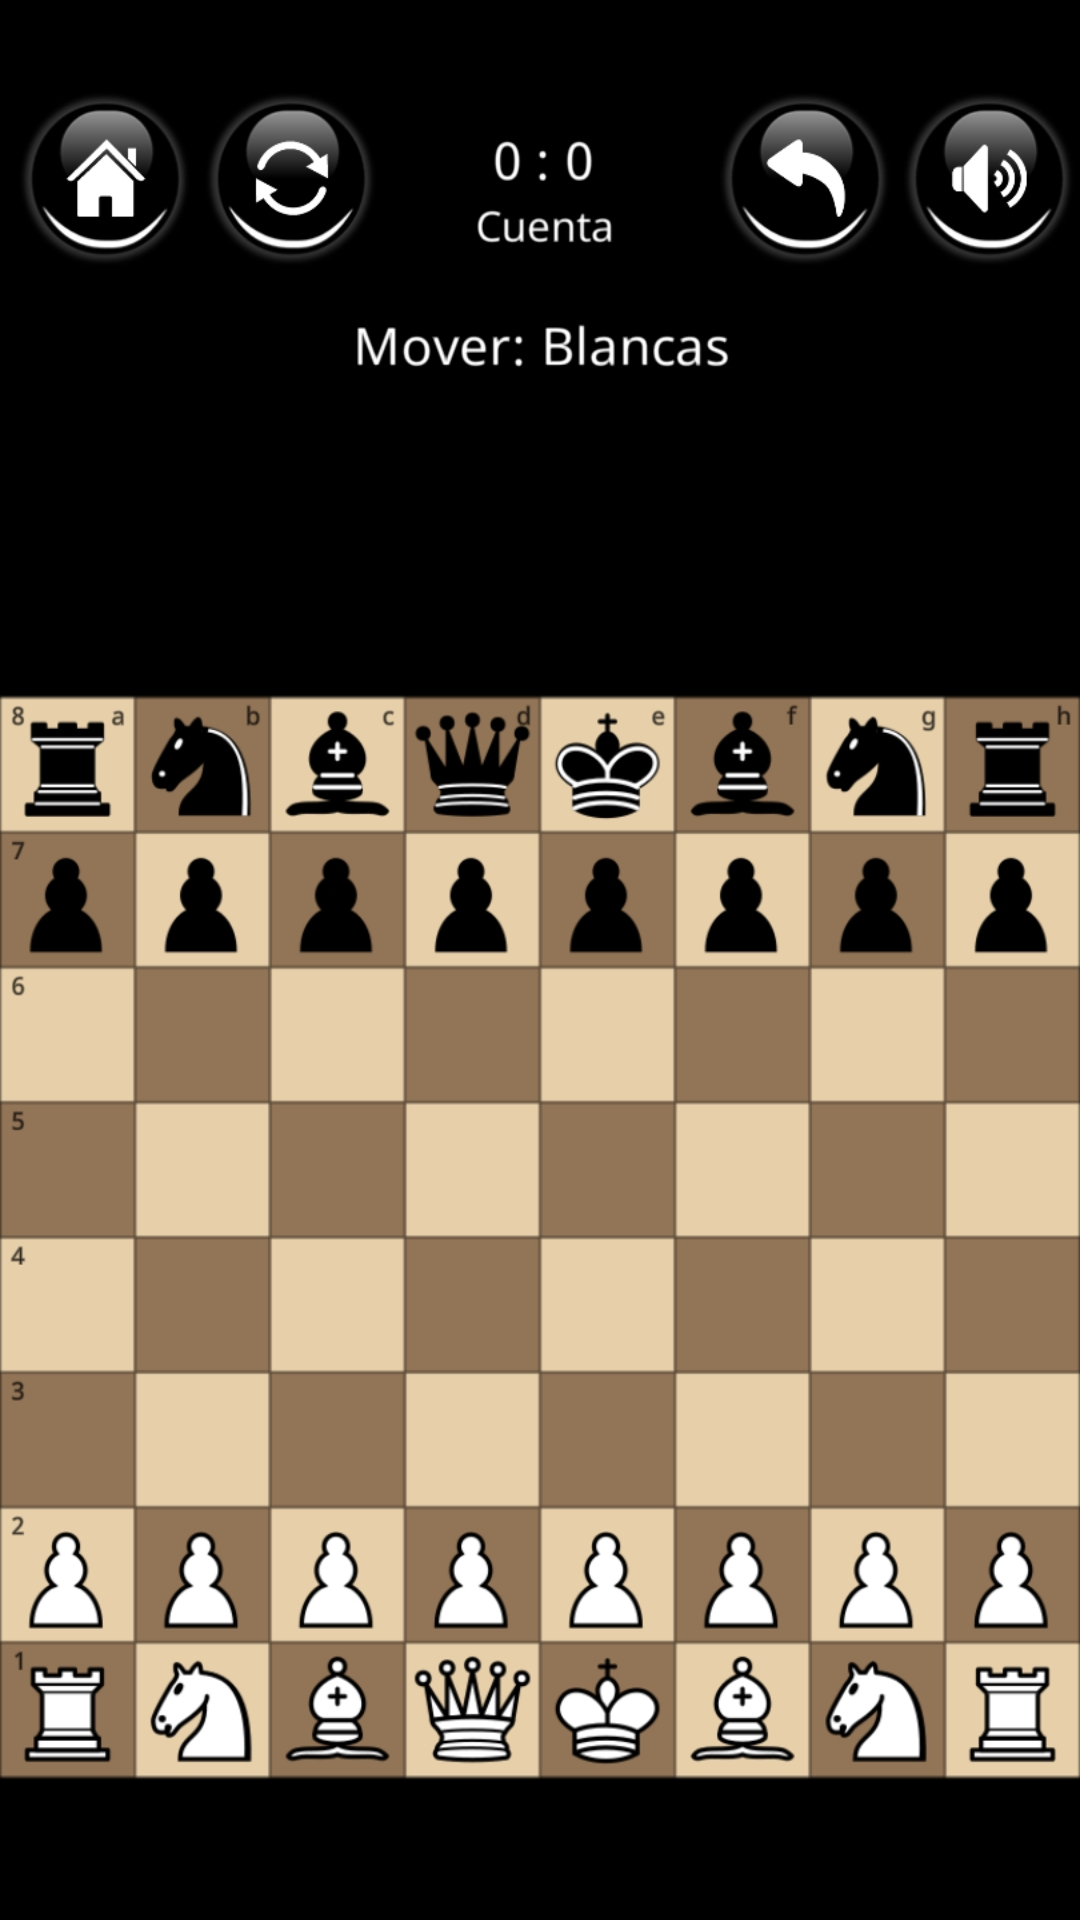 Jugar al ajedrez contra el ordenador